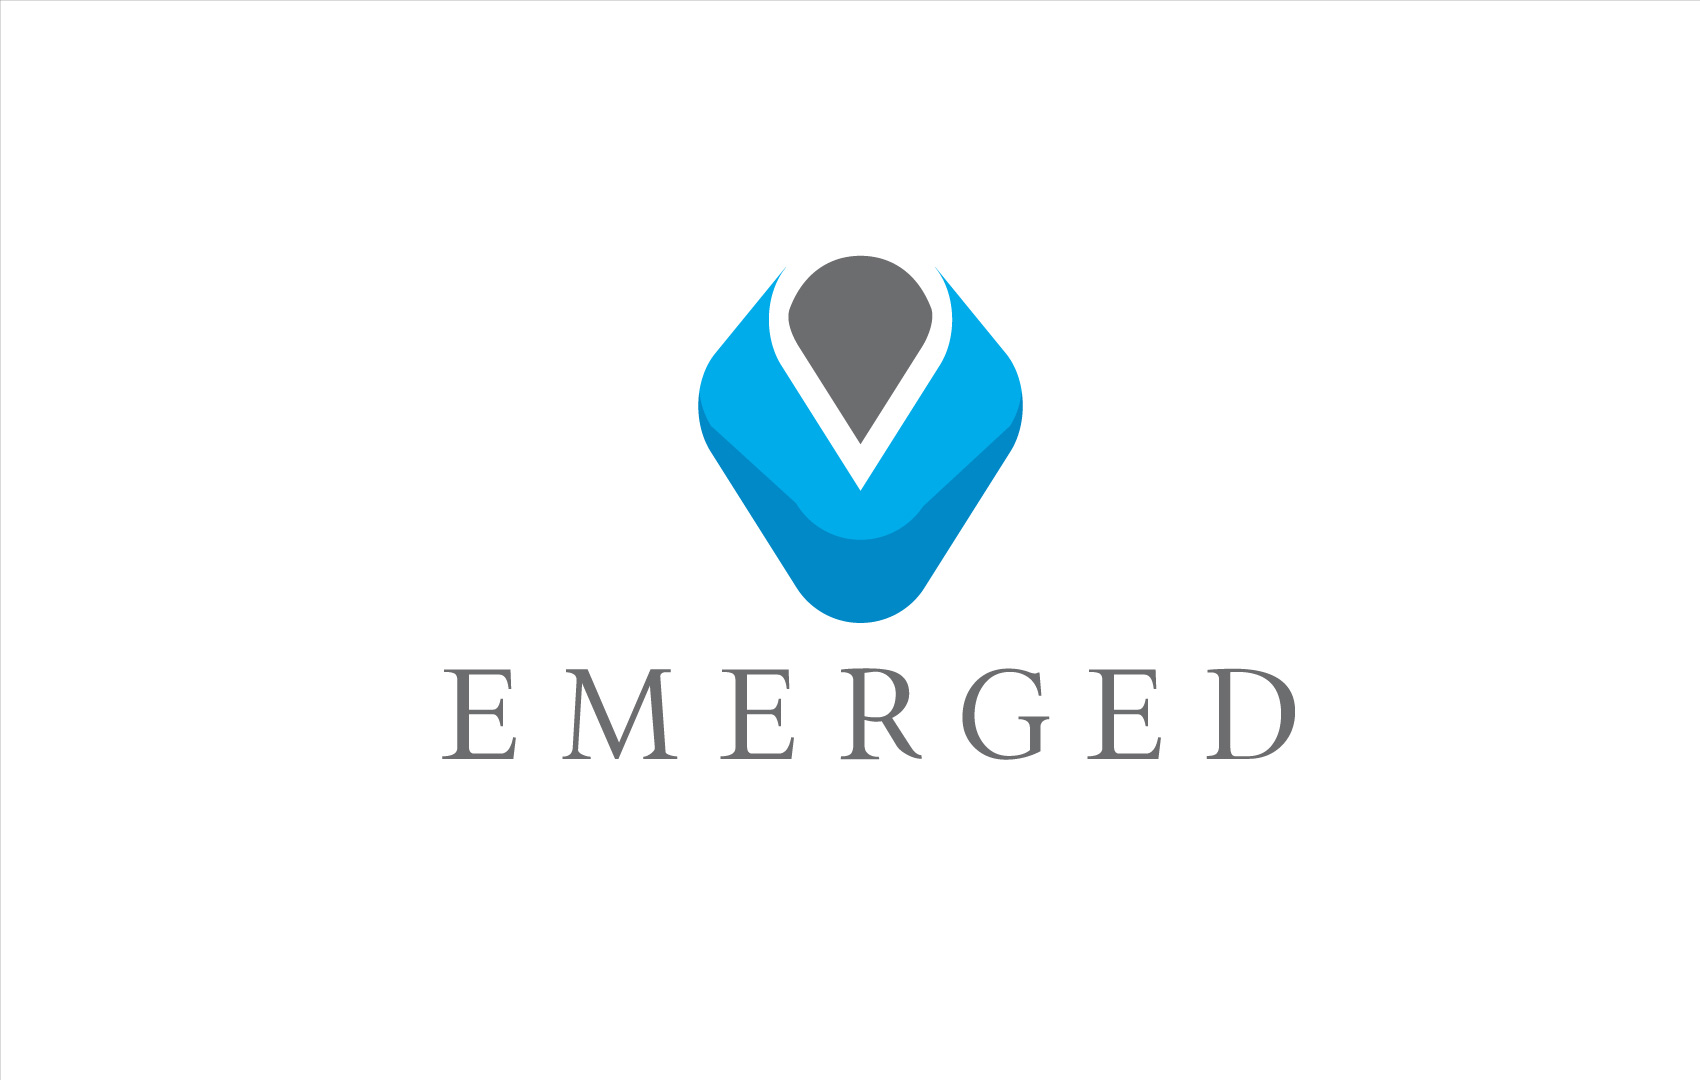 Emerged Identity design by hibriden